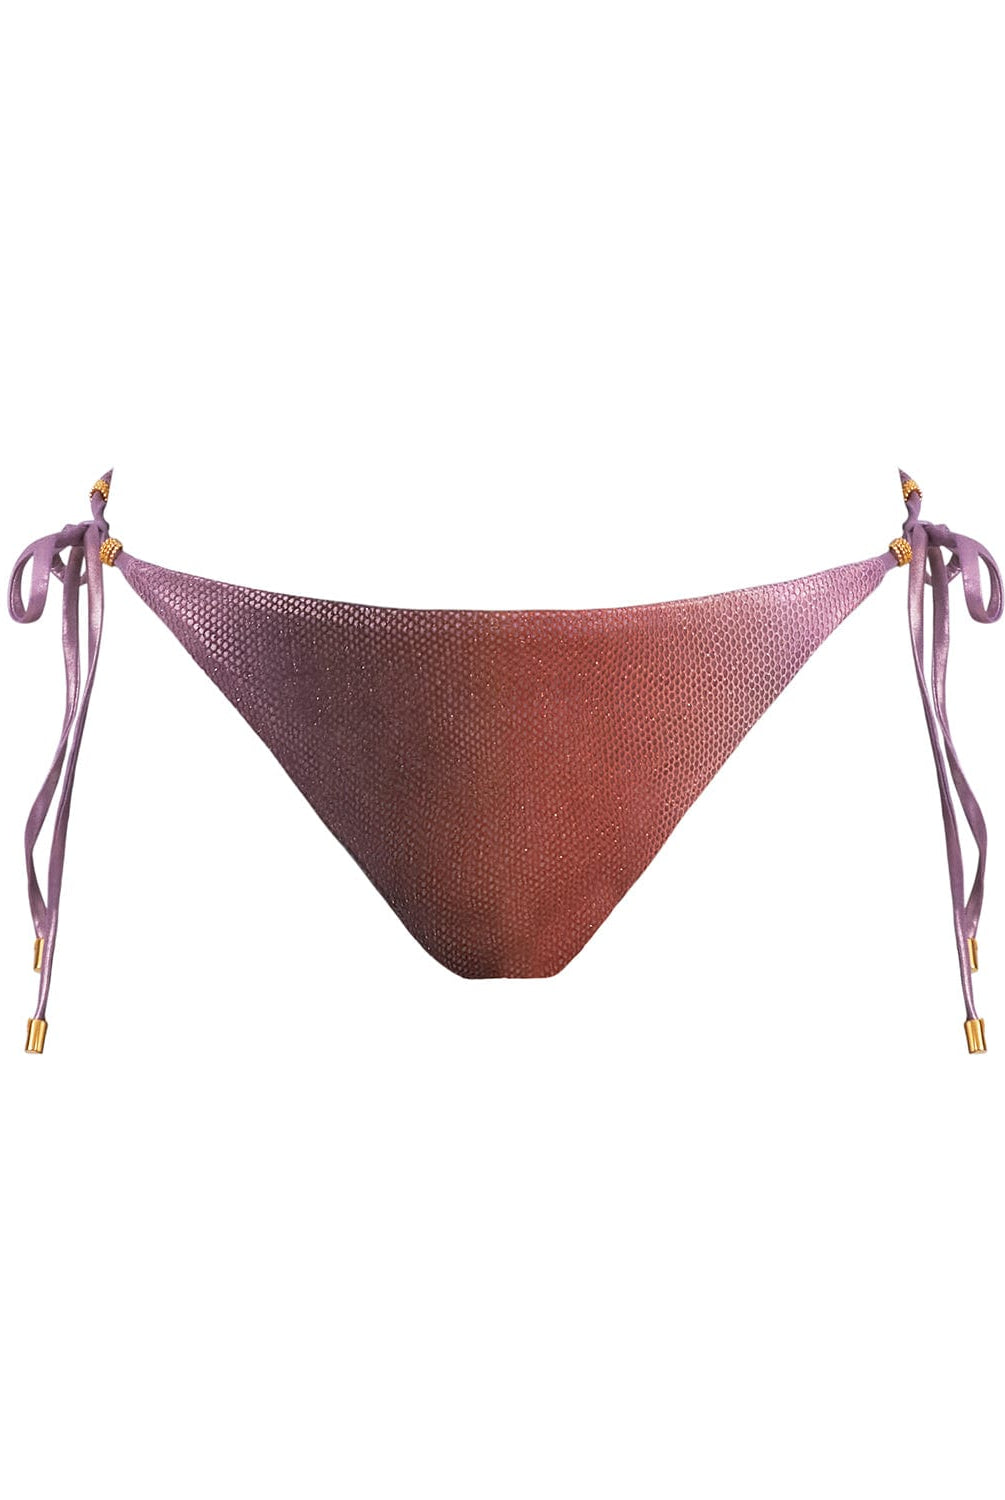 A purple bikini bottom against a white wall. 